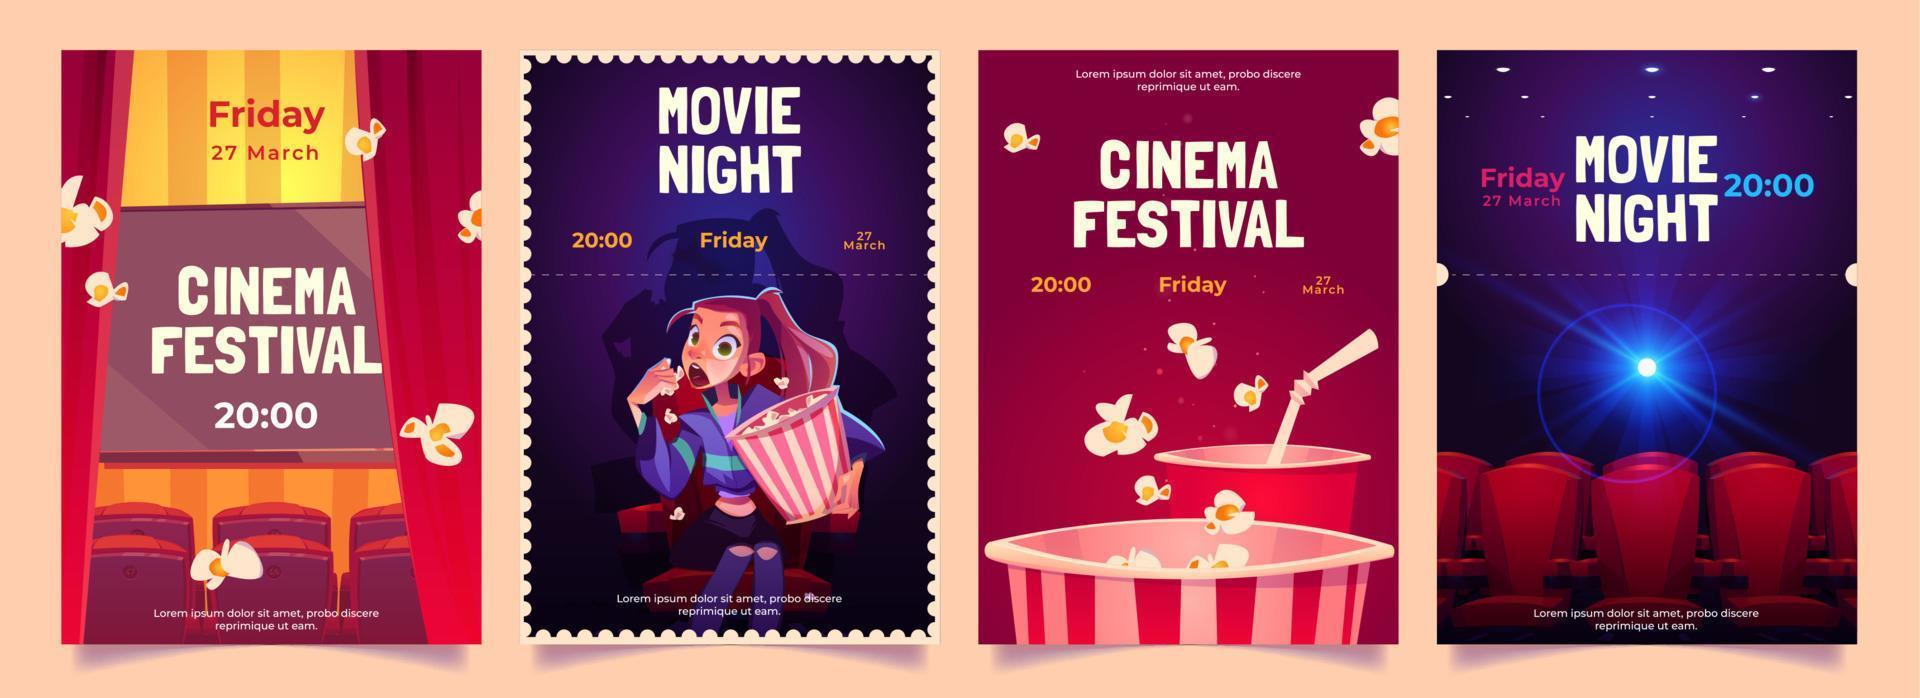 bioscoop festival, film nacht tekenfilm flyers reeks vector